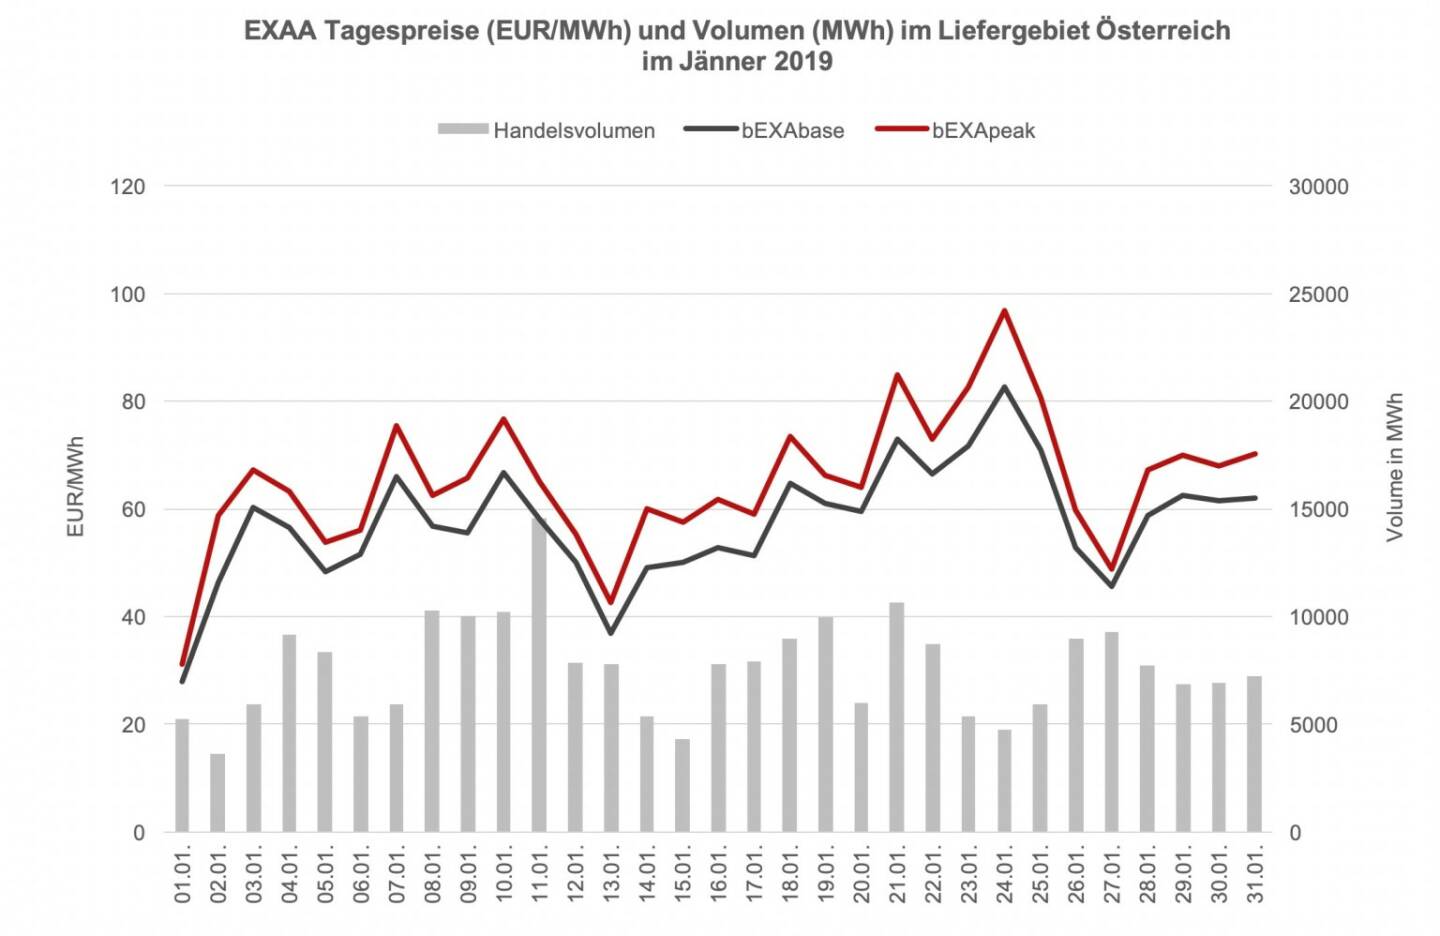 EXAA Tagespreise (EUR/MWh) und Volumen (MWh) im Liefergebiet Österreich im Jänner 2019